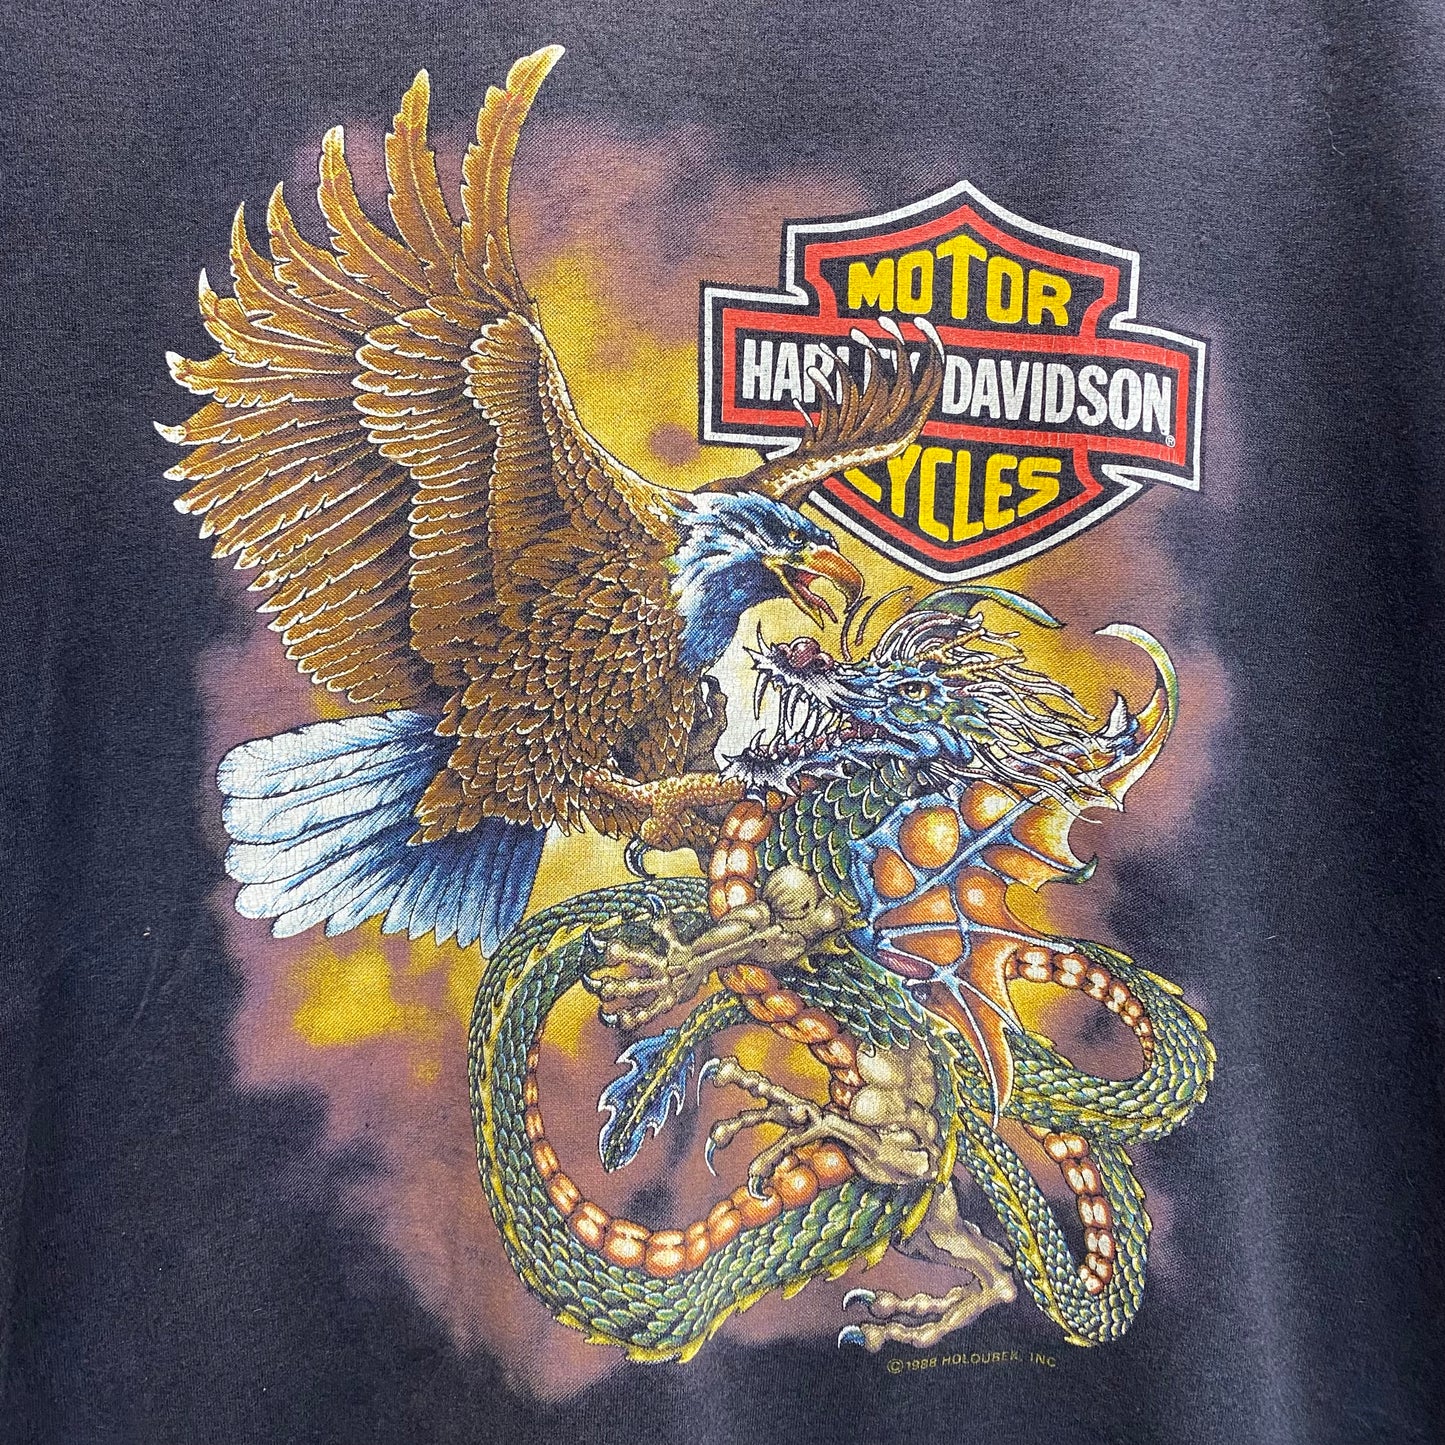 1988 harley davidson dragon vs eagle tshirt